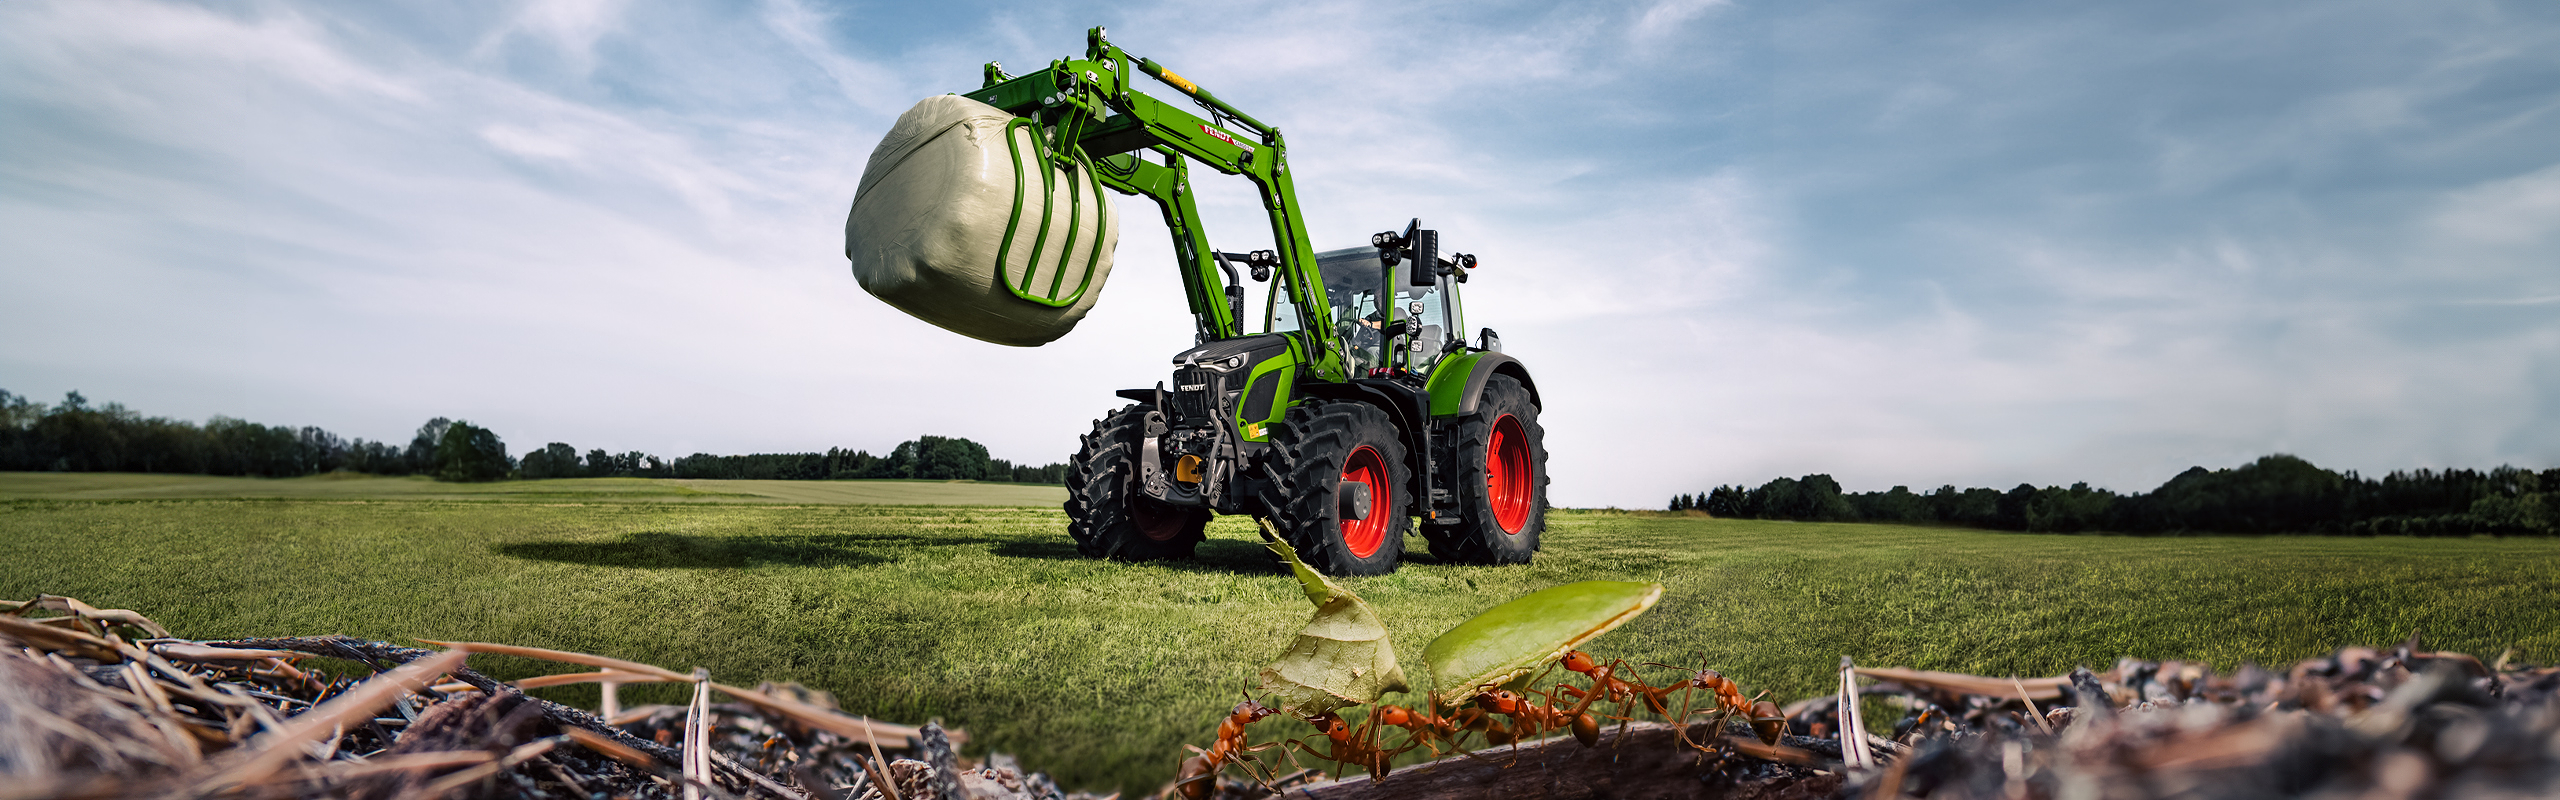 Fendt 600 Vario traktor seisab põllul ja tõstab silopalli. Esiplaanil on näha sipelgaid.